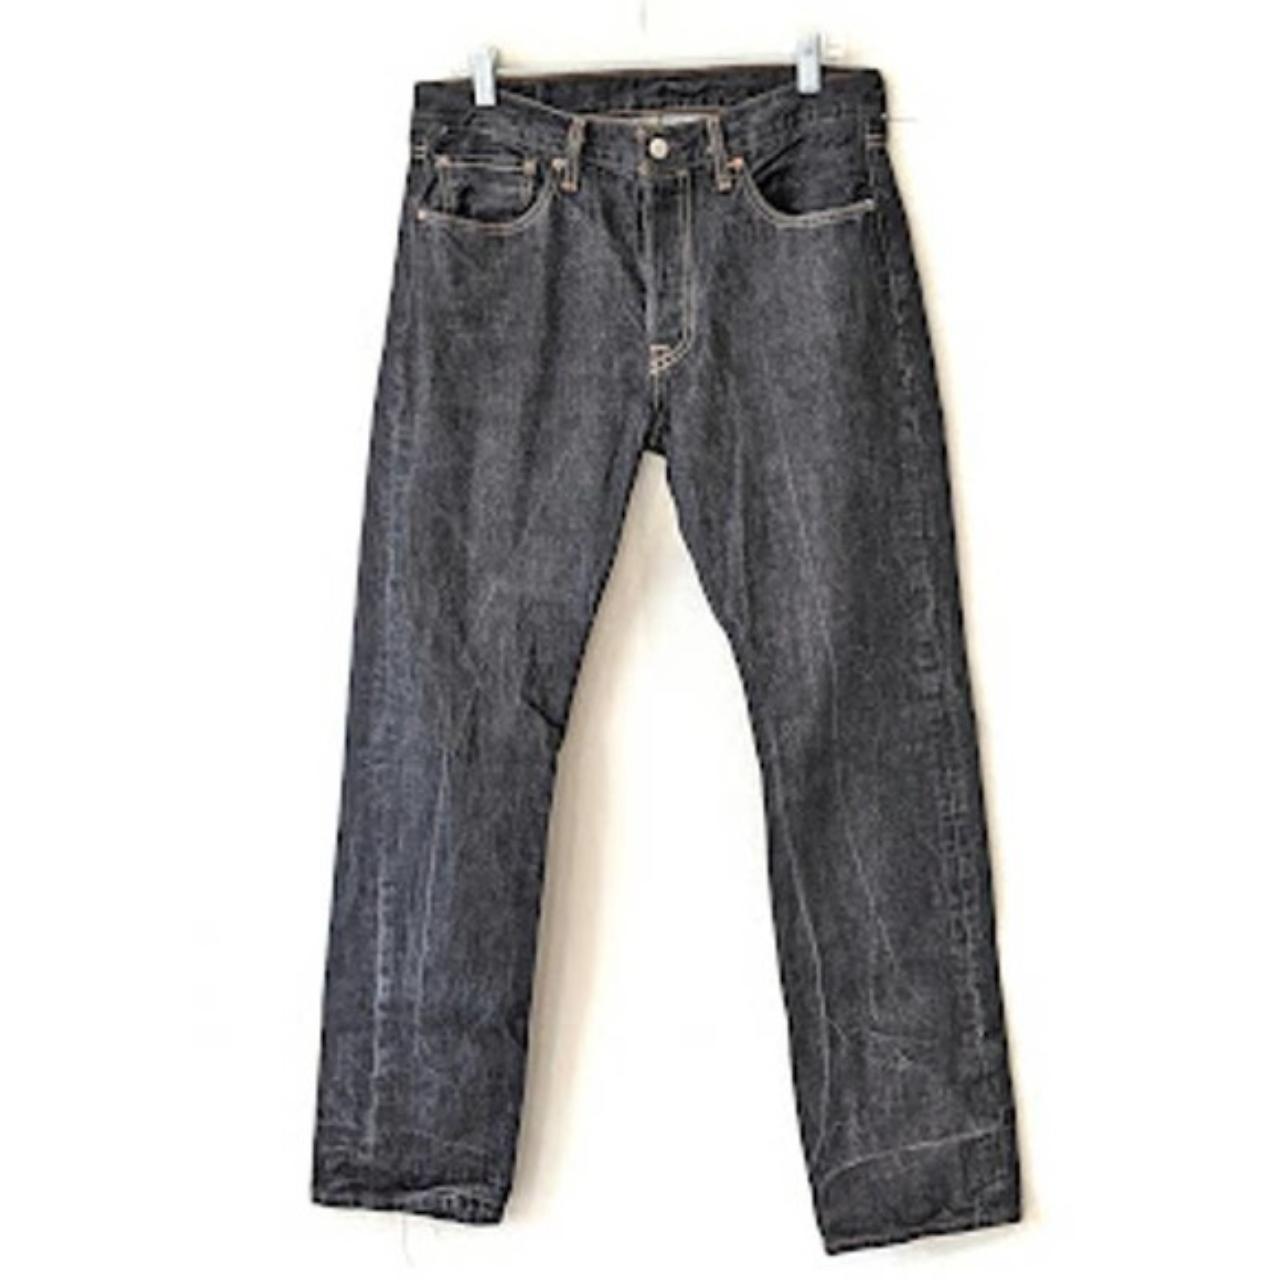 Levi's 501 Dark Wash Mens Jeans Size 32x32 L5155 S37303 - Depop